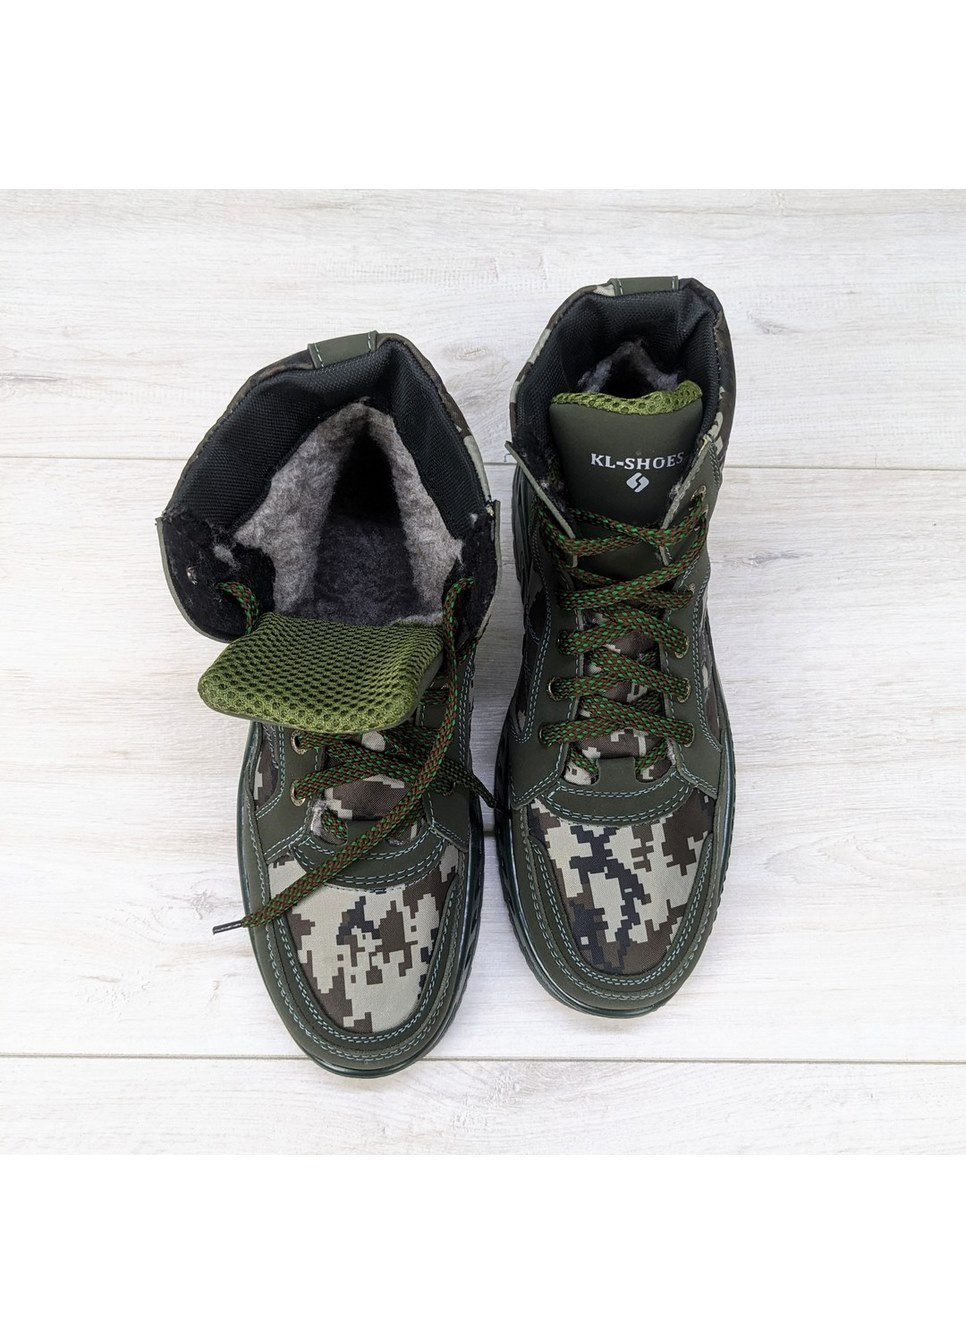 Хаки зимние ботинки мужские зимние камуфляжные Kluchkovskyy